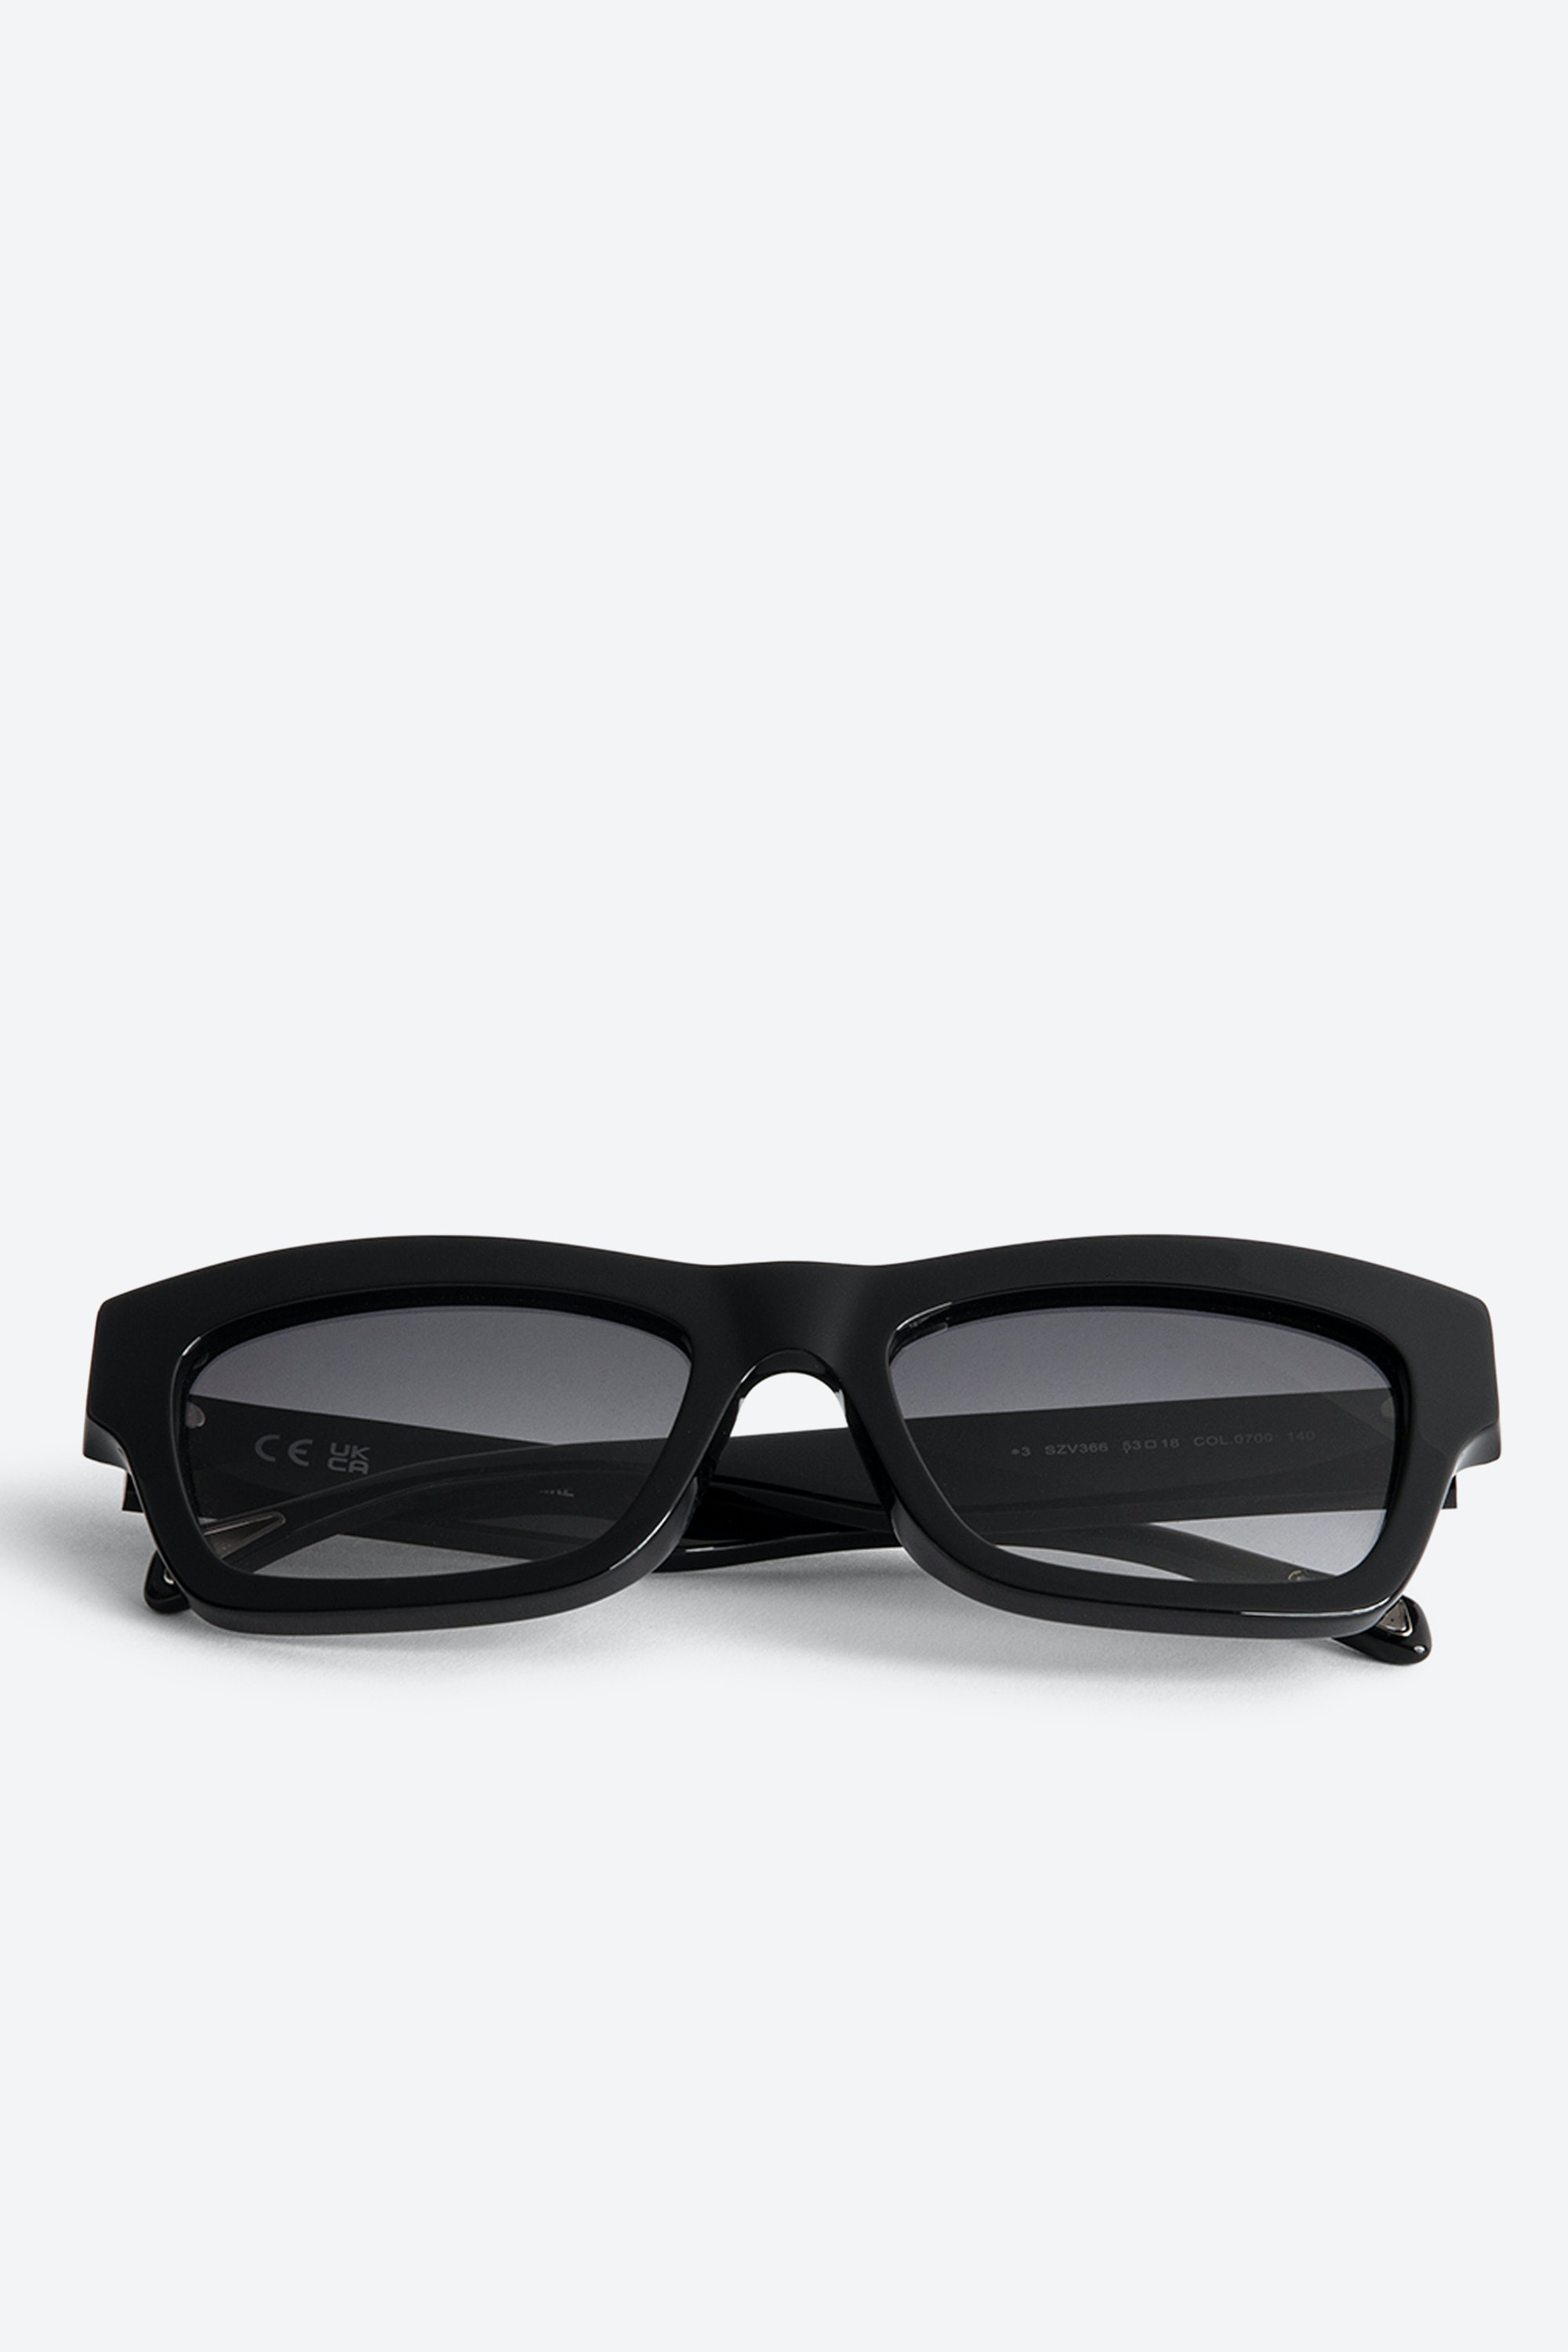 ZV23H1 Sunglasses - 1